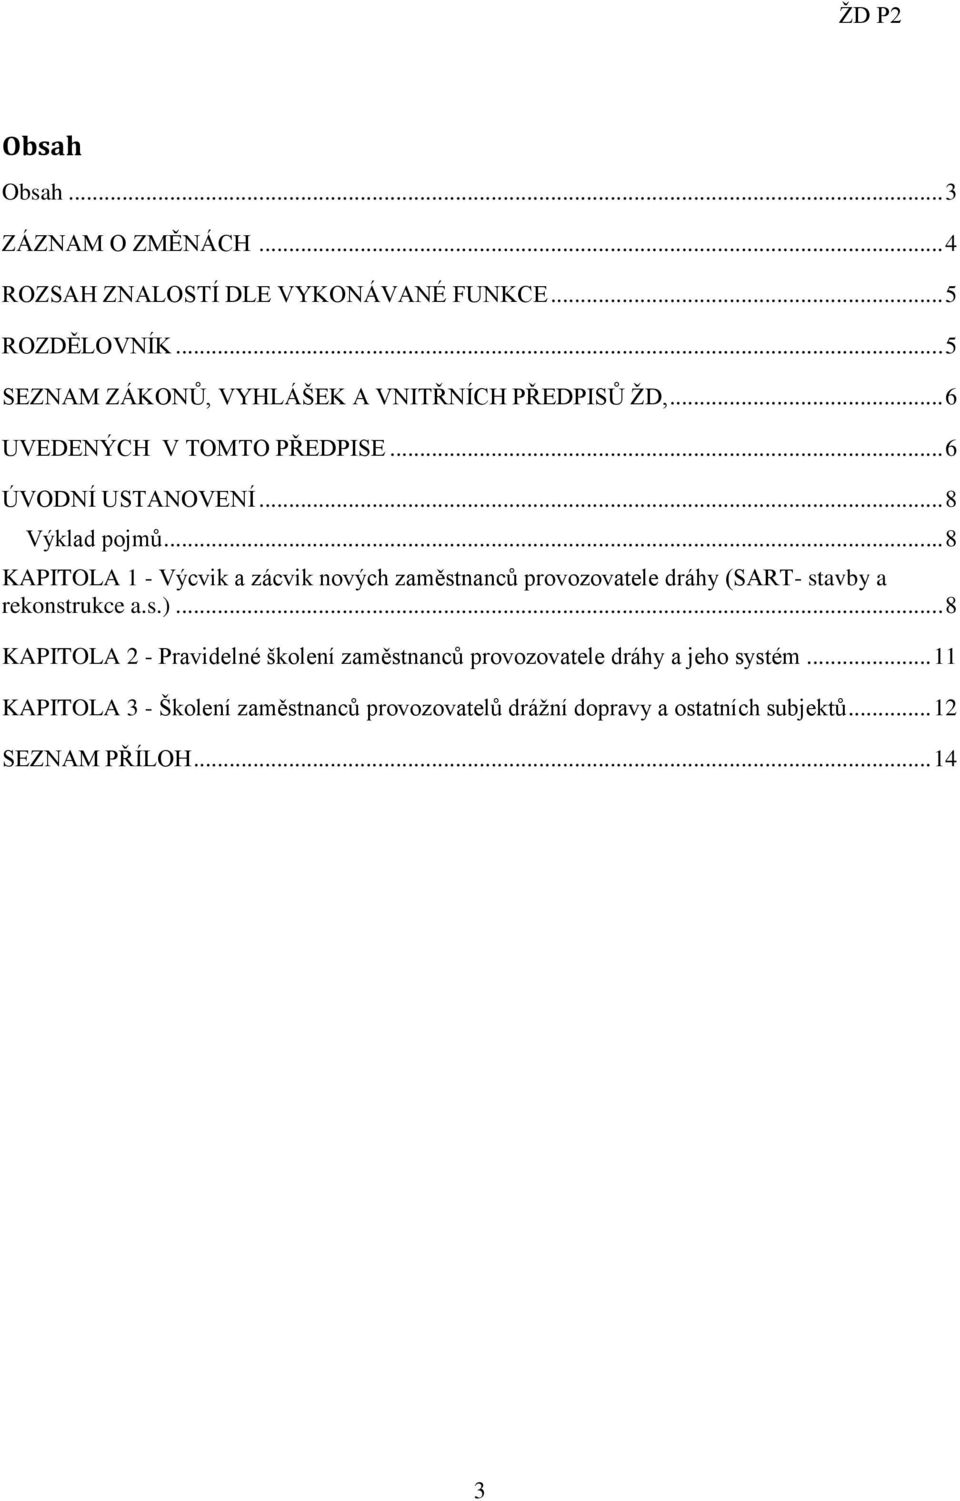 .. 8 KAPITOLA 1 - Výcvik a zácvik nových zaměstnanců provozovatele dráhy (SART- stavby a rekonstrukce a.s.).